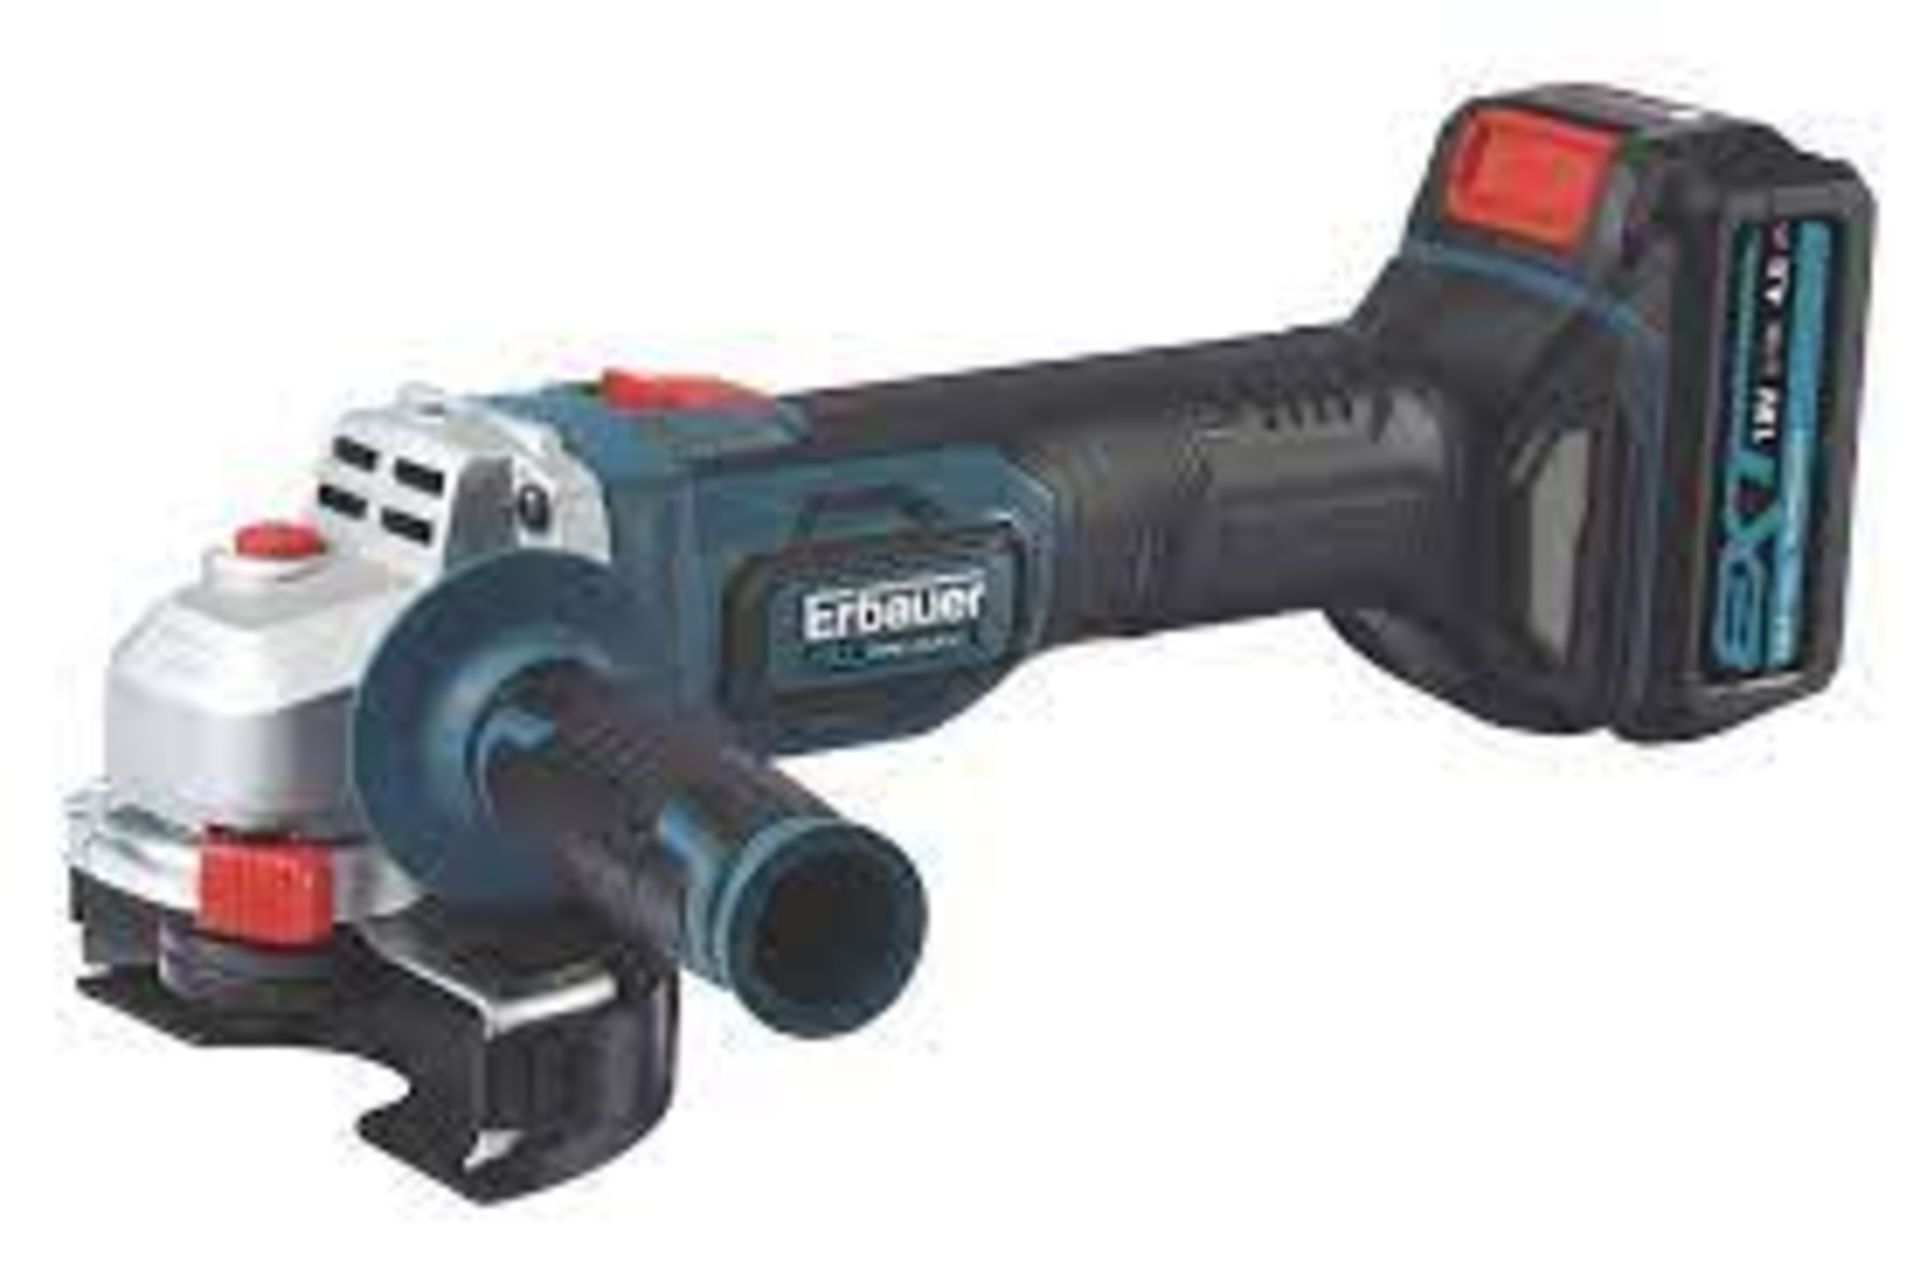 Erbauer EAG 18 Li angle grinder - SR4R.